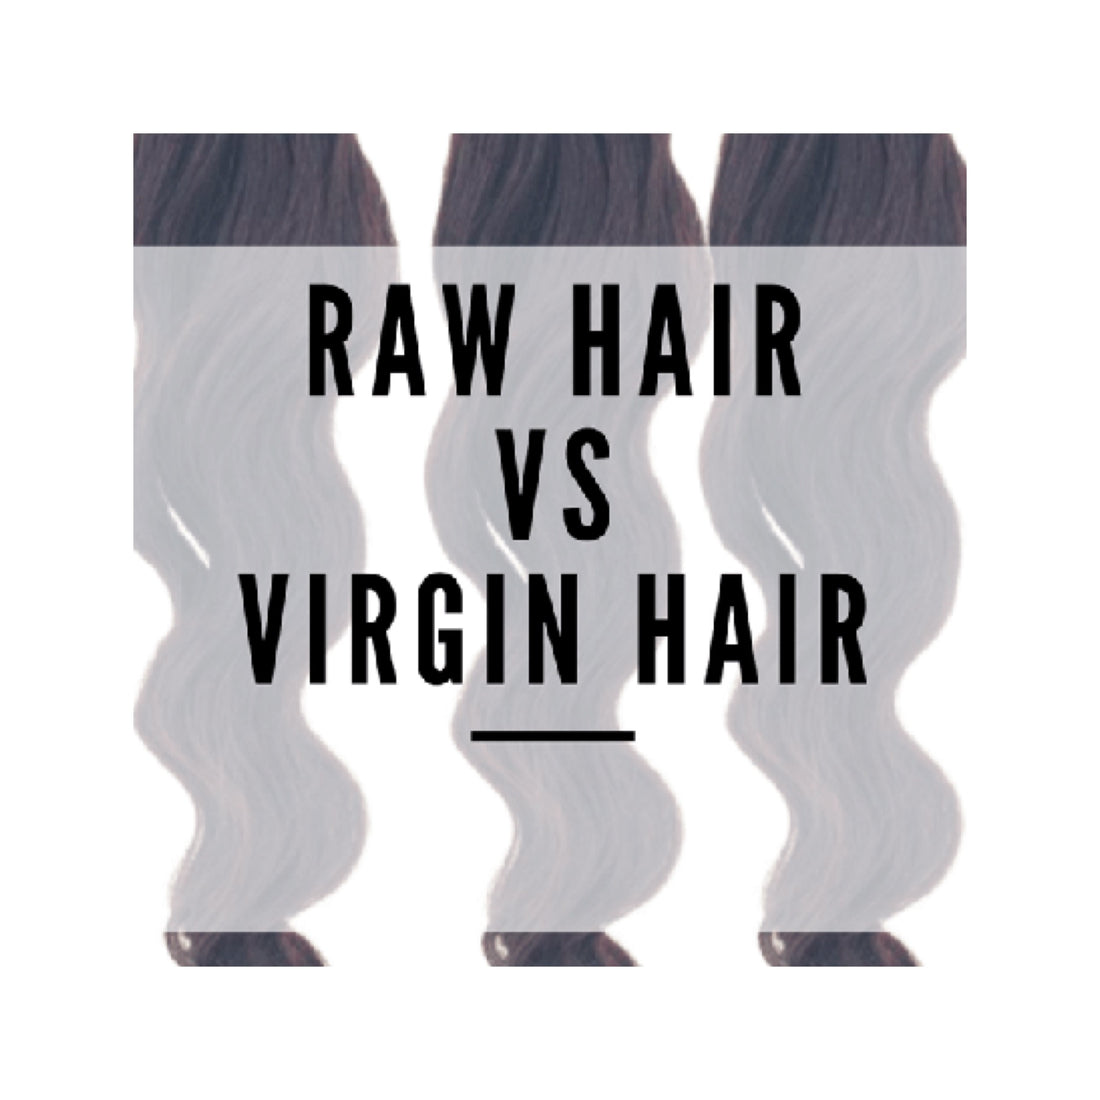 Is Virgin Hair Better Than Raw Hair?